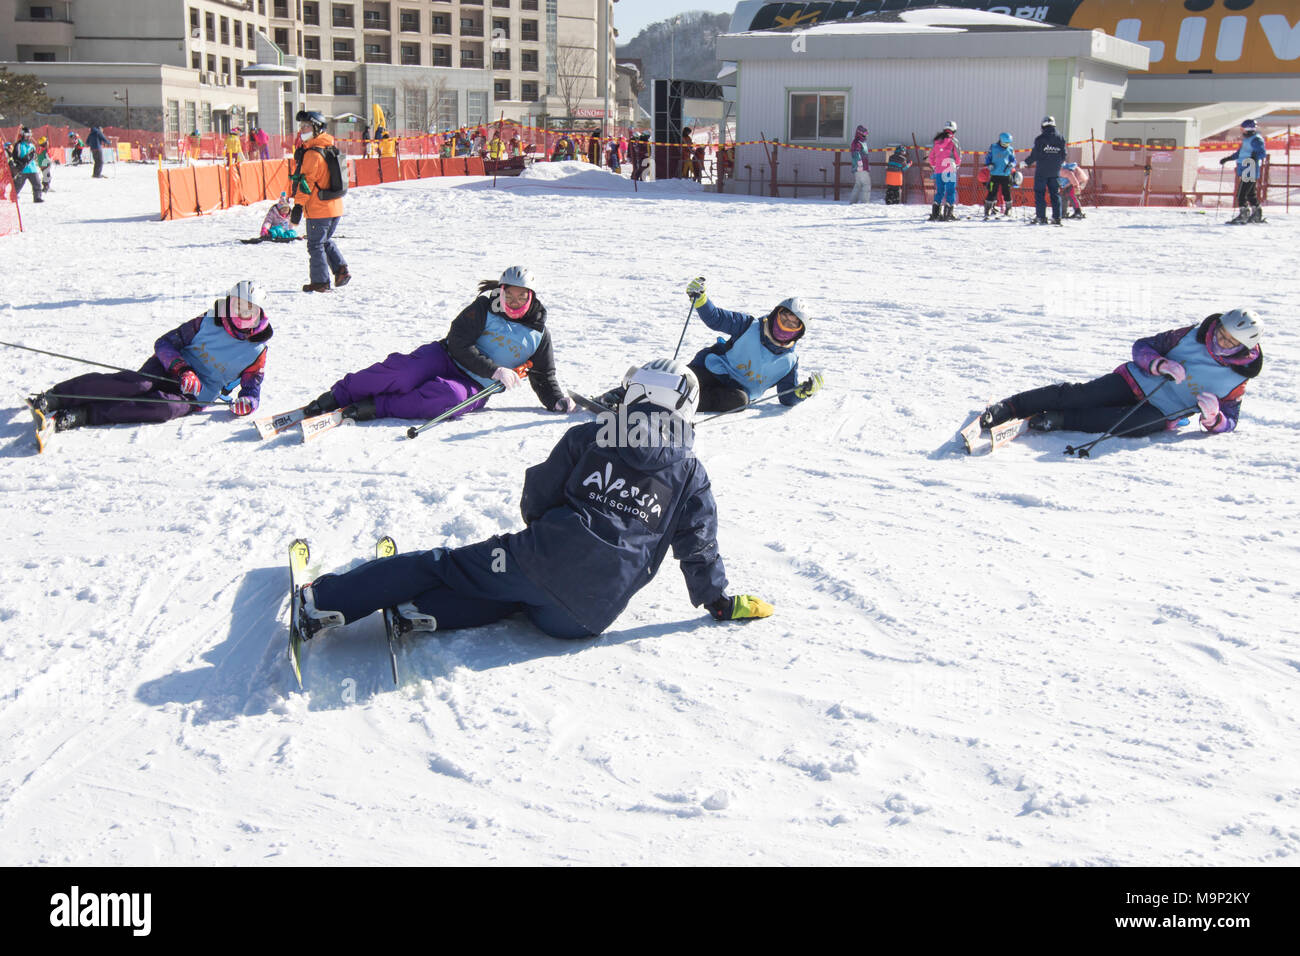 Quatre femmes apprennent à se tenir debout après avoir chuté alors que le ski, dans l'Alpensia resort dans la région du Gangwon-do en Corée du Sud. L'Alpensia Resort est une station de ski et une attraction touristique. Il est situé sur le territoire du canton de Daegwallyeong-myeon, dans le comté de Pyeongchang, hébergeant les Jeux Olympiques d'hiver en février 2018. La station de ski est à environ 2,5 heures à partir de l'aéroport d'Incheon à Séoul ou en voiture, tous principalement d'autoroute. Alpensia possède six pistes de ski et snowboard, avec fonctionne jusqu'à 1.4 km (0,87 mi) long, pour les débutants et les skieurs avancés, et une zone Banque D'Images